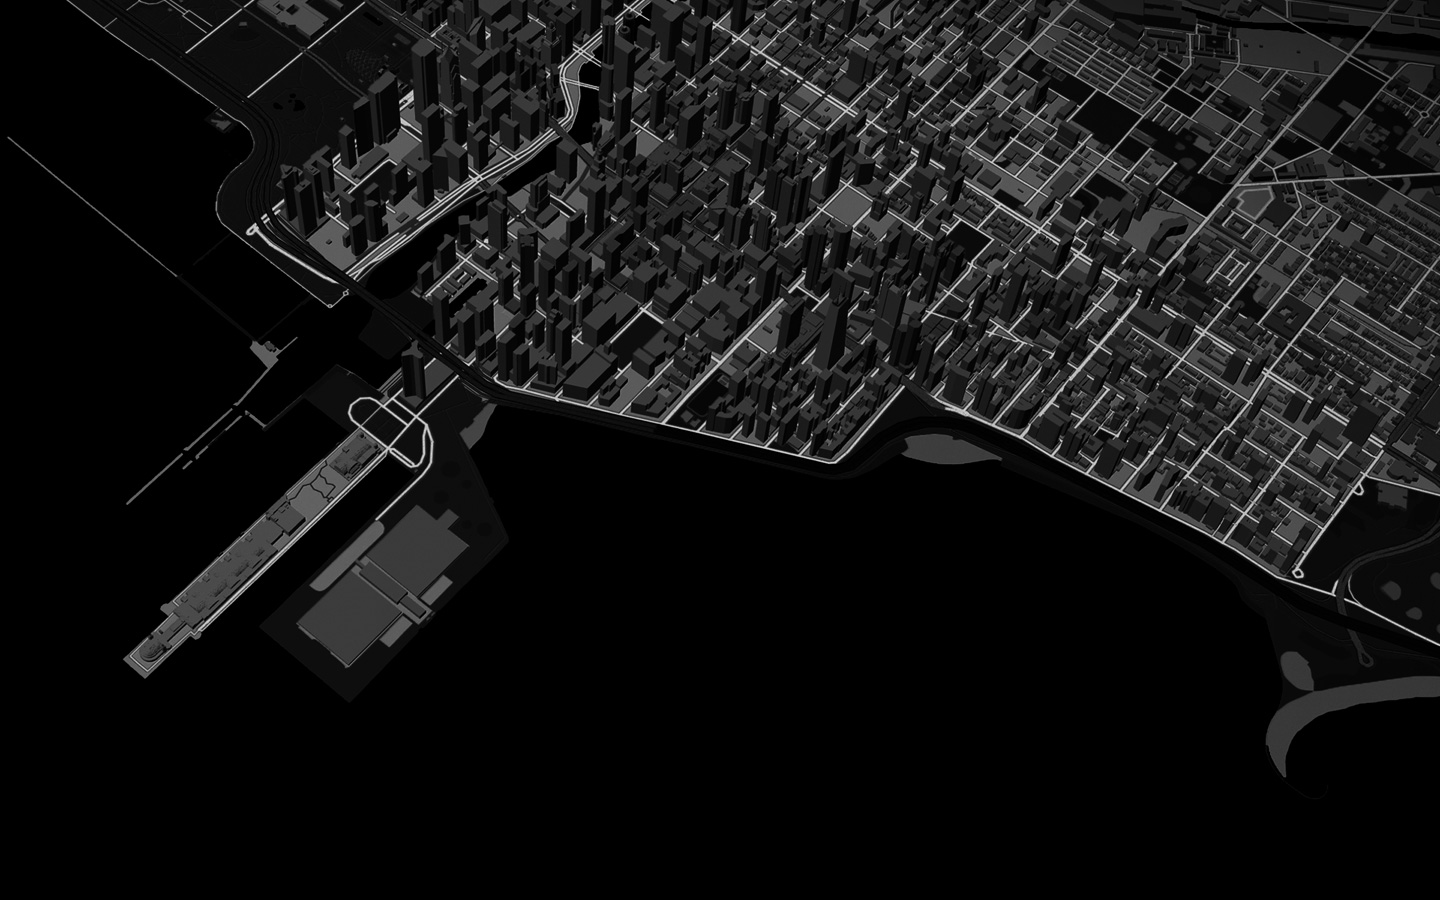 Animācija – līnija, kas apzīmē skrējēja maršrutu pilsētā 3D Maps skatā